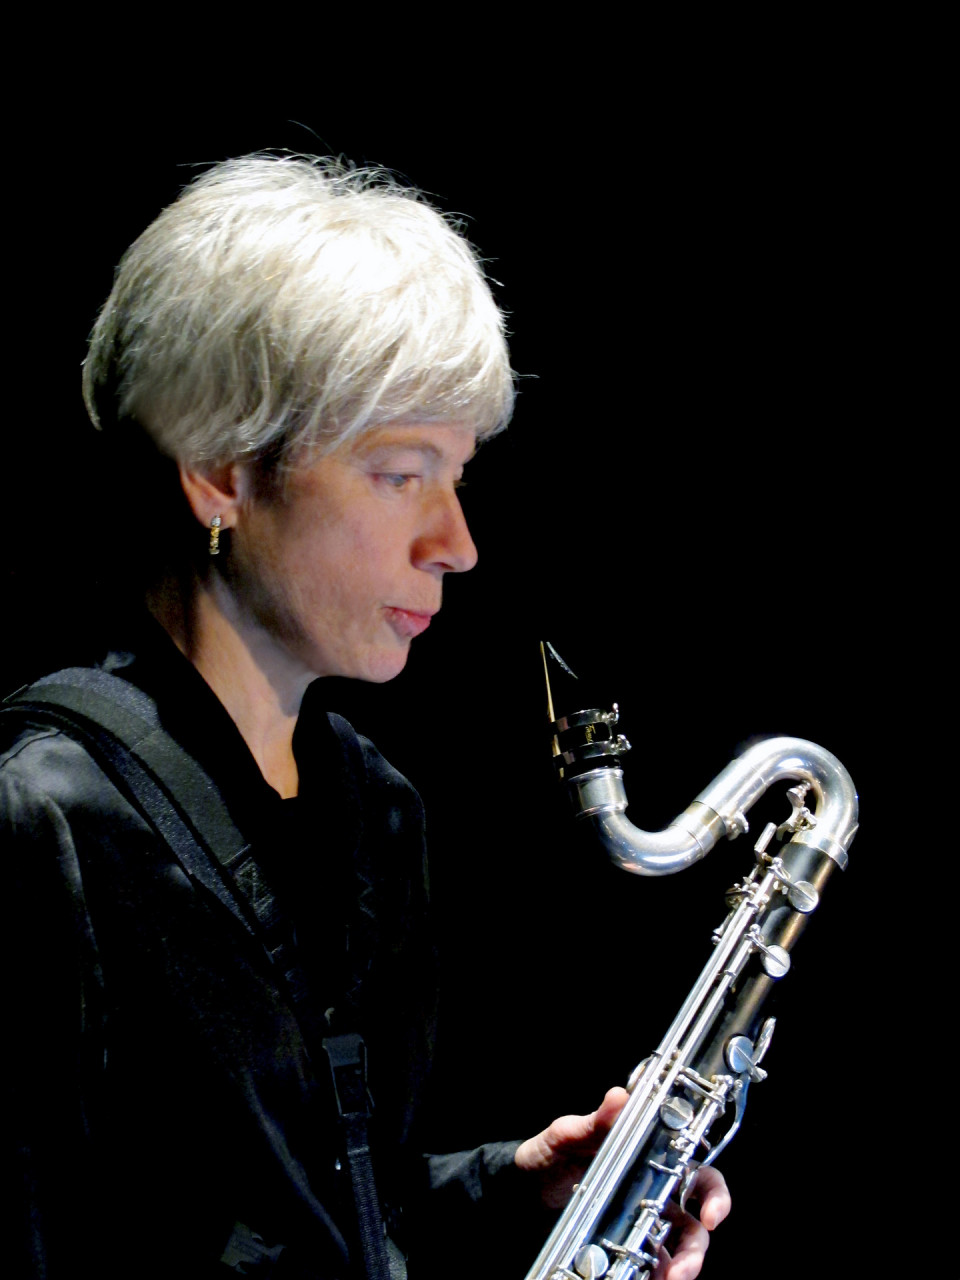 Lori Freedman / Les bonnes histoires, Studio multimédia – Conservatoire de musique de Montréal, Montréal (Québec) [Photograph: Céline Côté, Montréal (Québec), March 13, 2014]